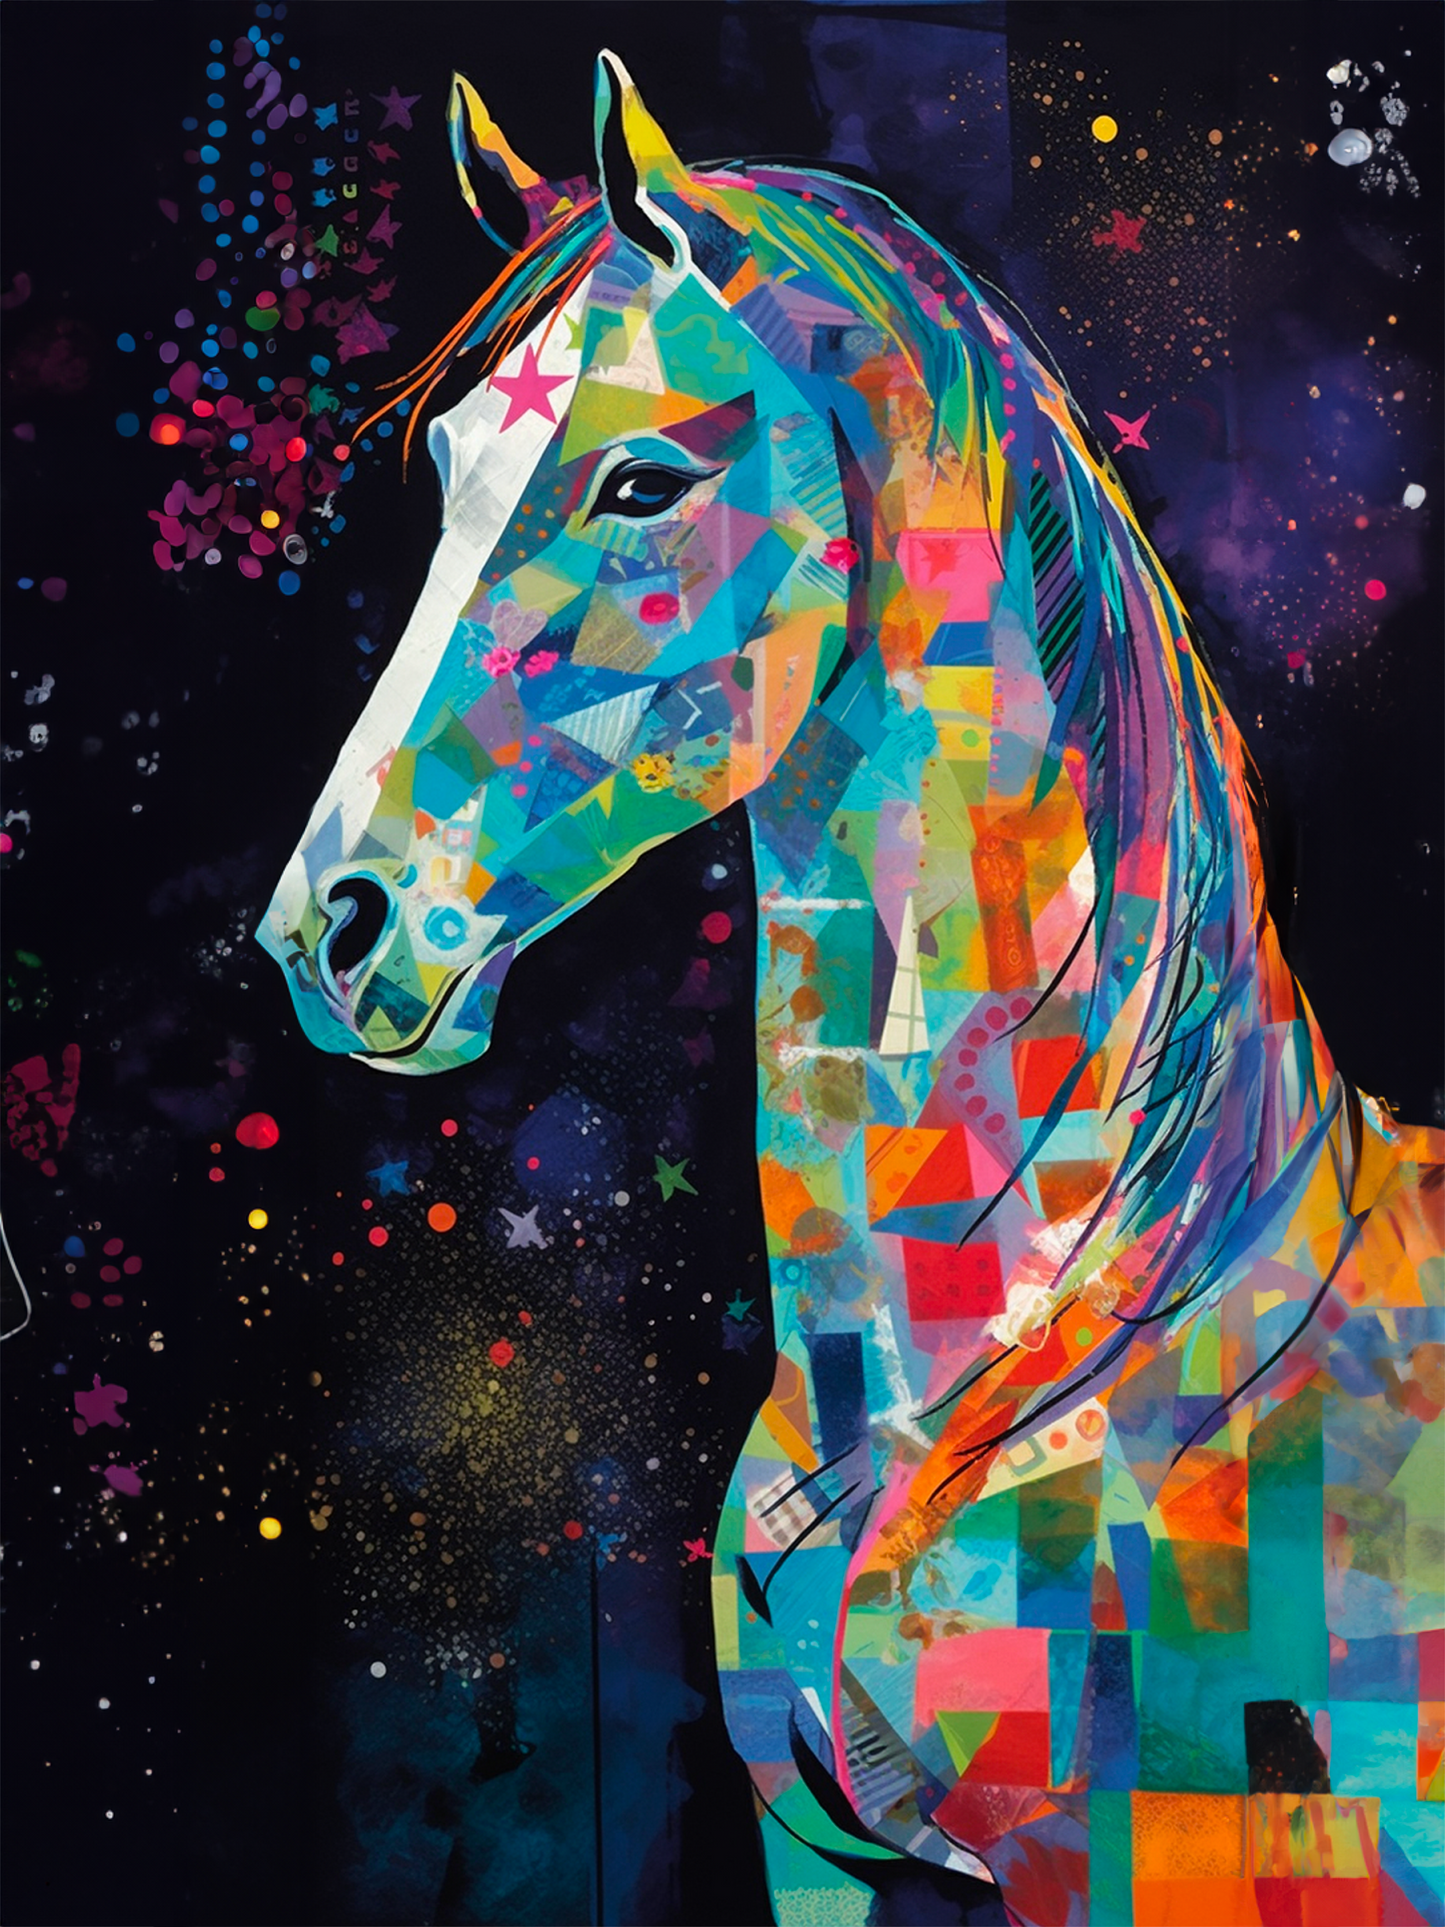 Œuvres d'art mettant en vedette un cheval et un ciel nocturne, créées avec des techniques pop art et kirigami, couleurs audacieuses et vibrantes, des formes et des textures dynamiques un style abstrait et expressif,